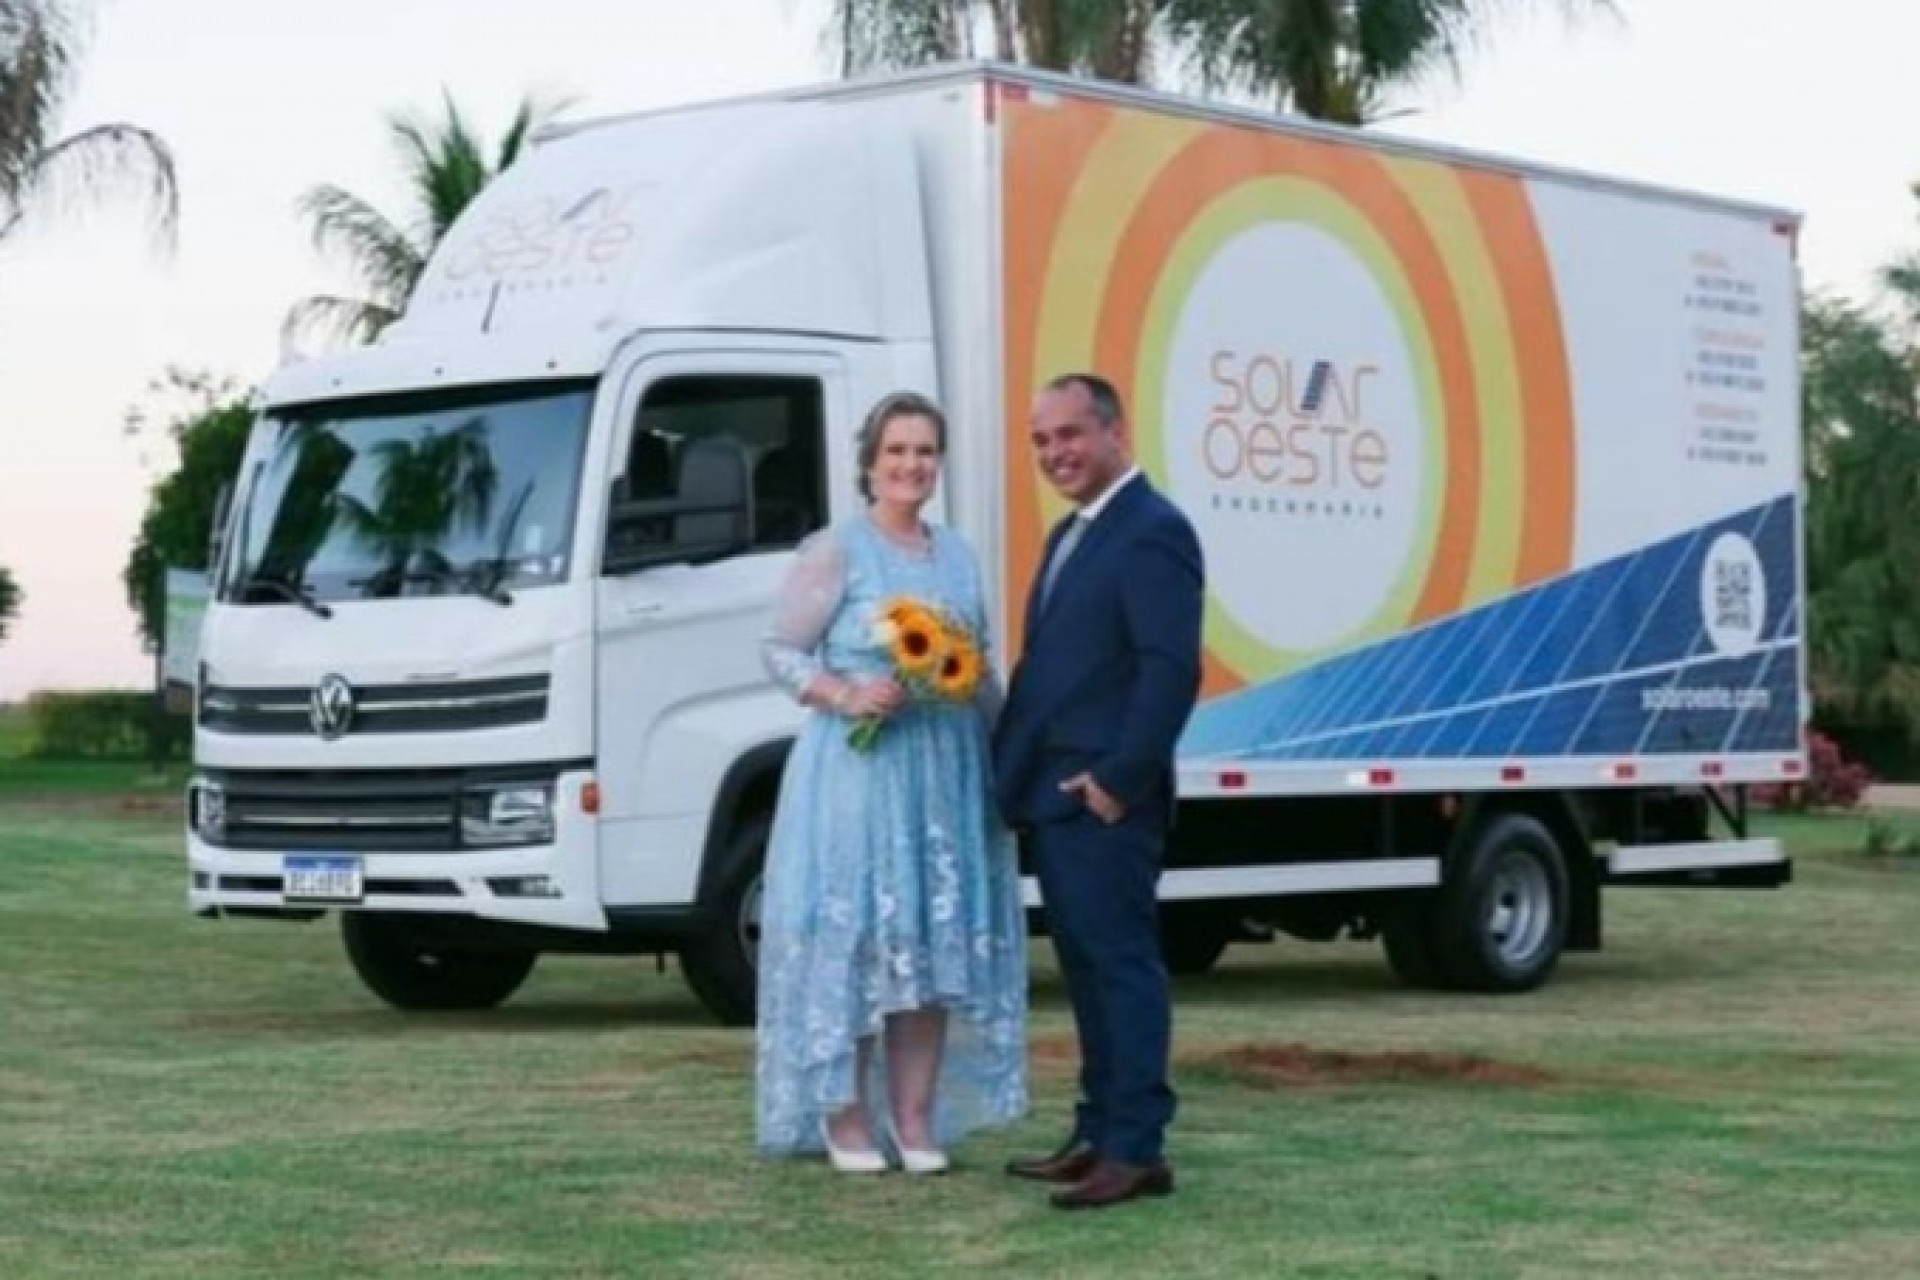 Noiva chega ao próprio casamento dirigindo um caminhão e viraliza